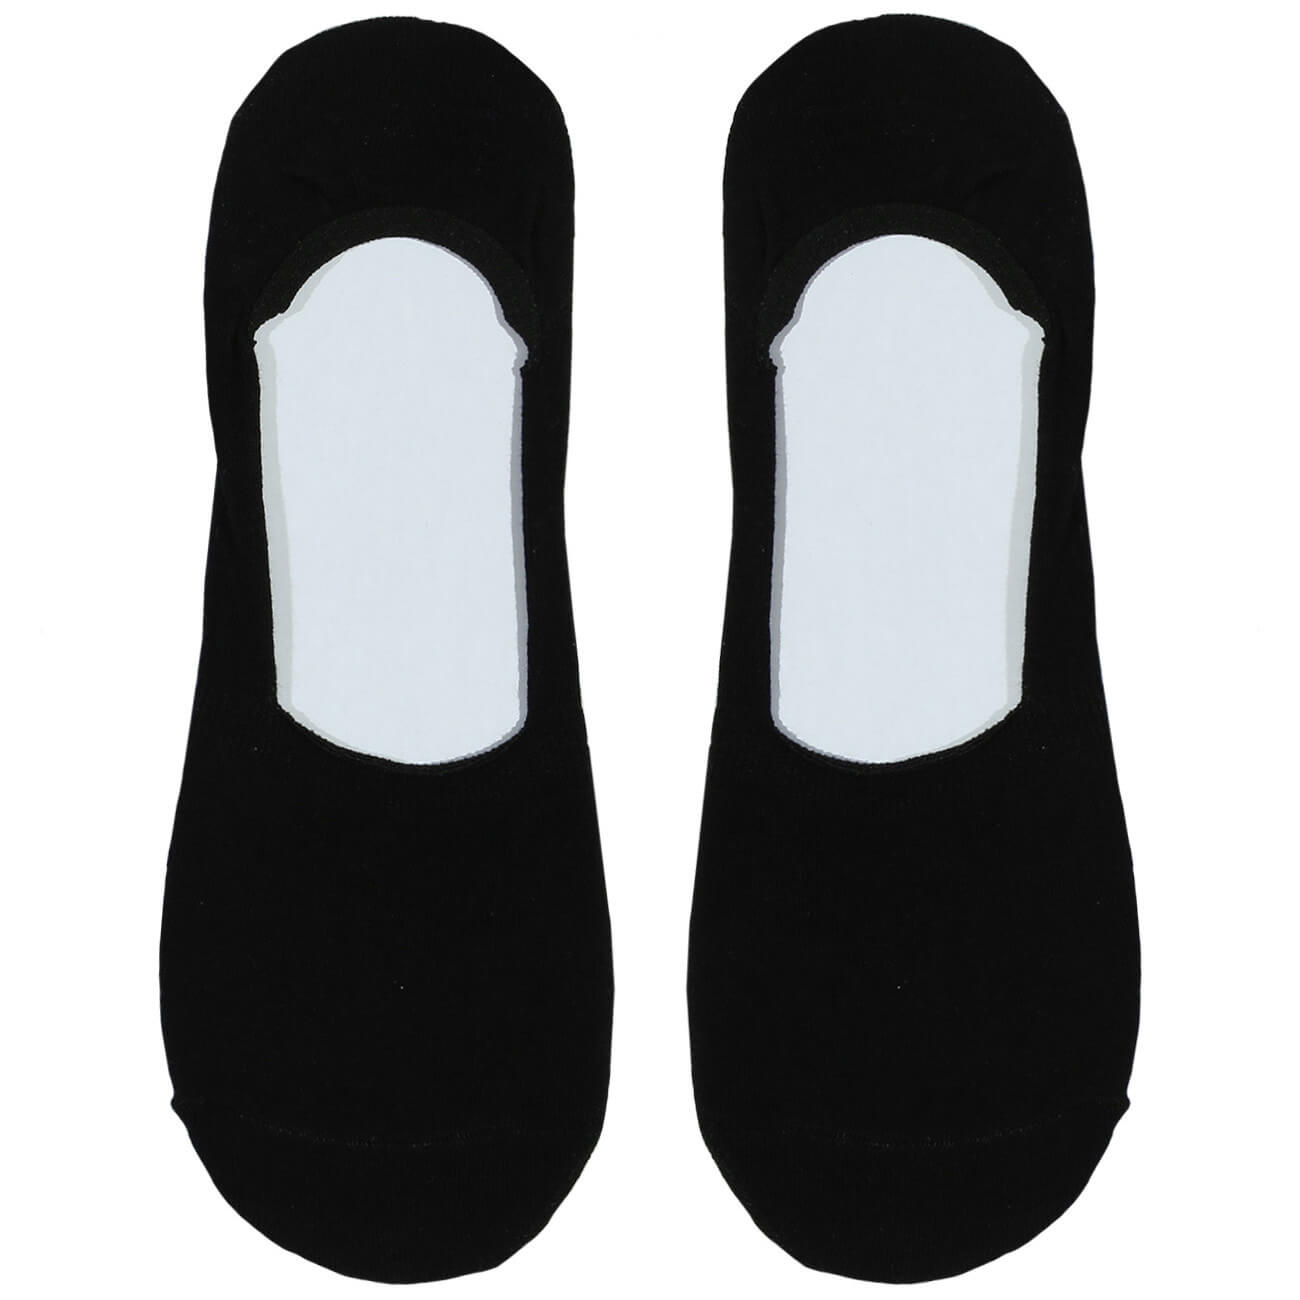 Носки-следки мужские, р. 39-42, хлопок/полиэстер, черные, Basic носки следки мужские р 43 46 хлопок полиэстер черные basic